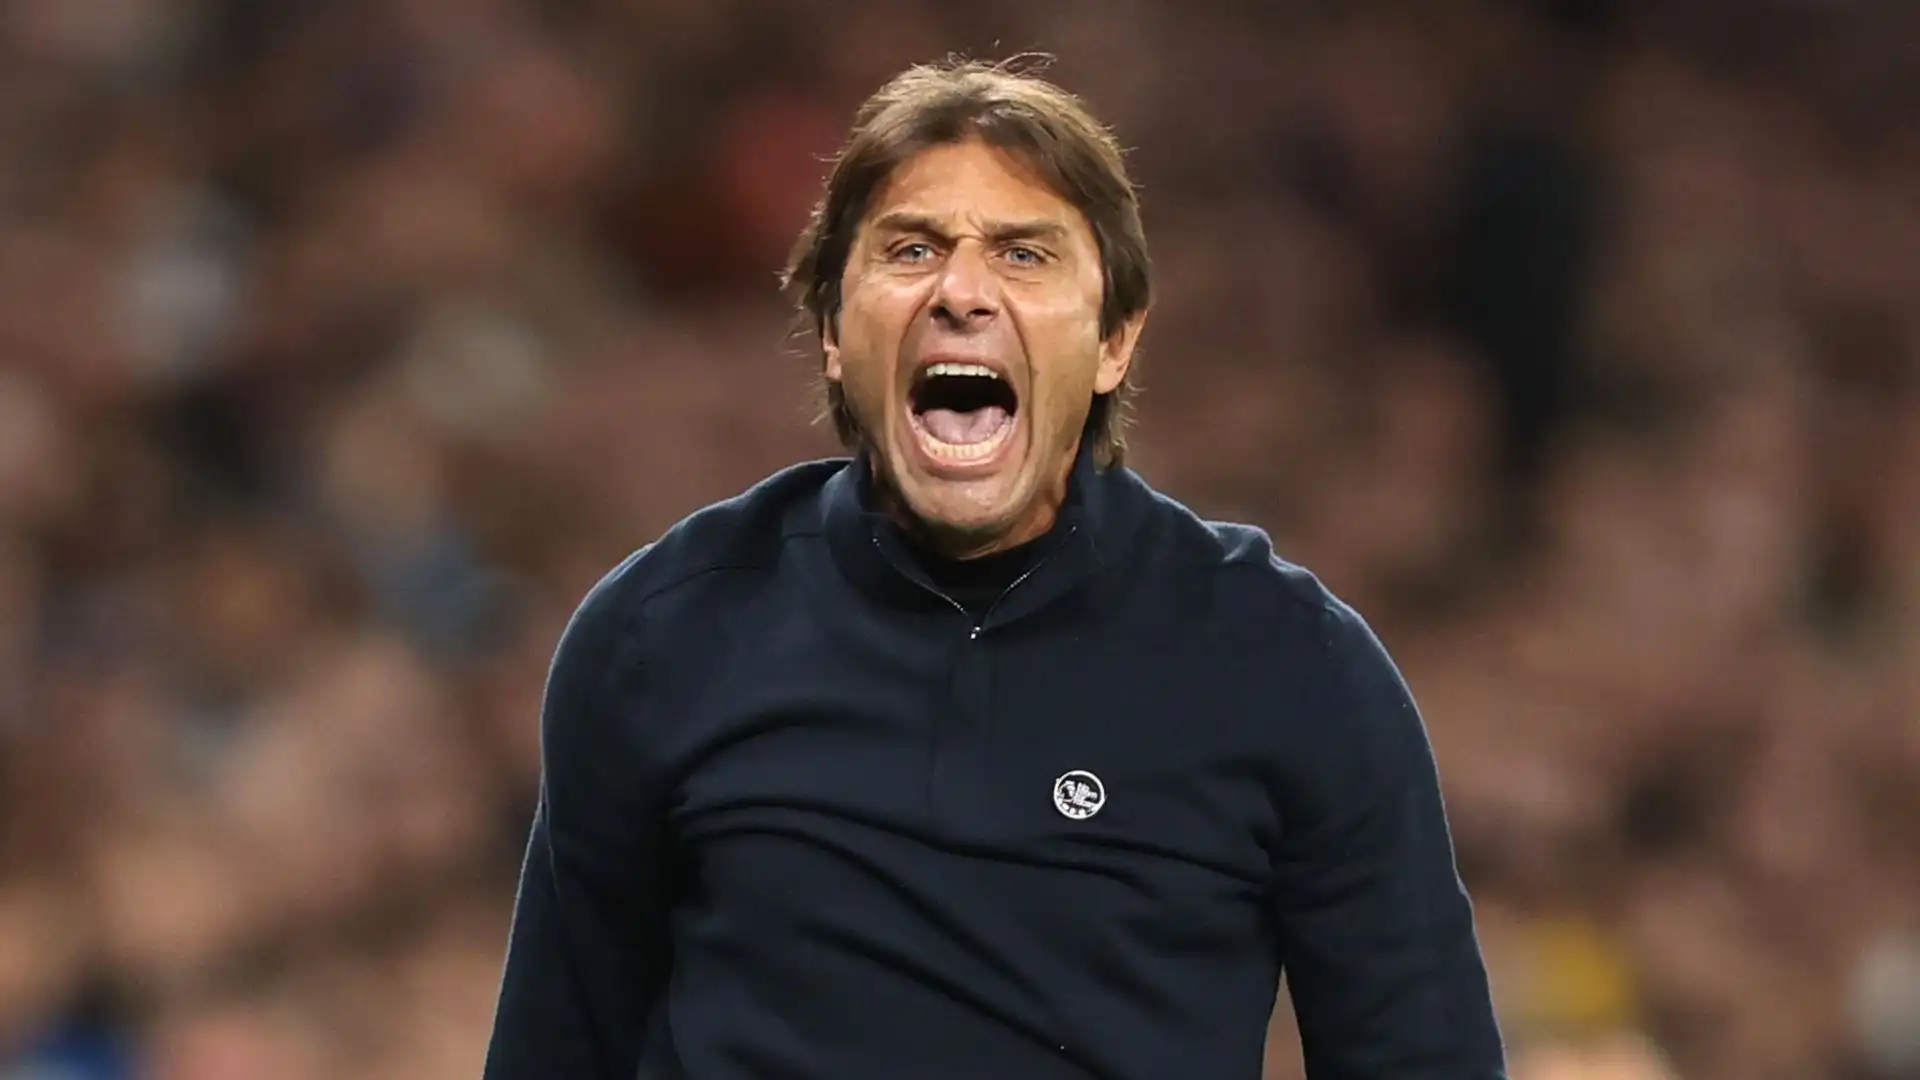 L'ex tecnico di Juve, Chelsea, Tottenham e Inter sarebbe stato contattato negli ultimi mesi, riporta il quotidiano La Repubblica